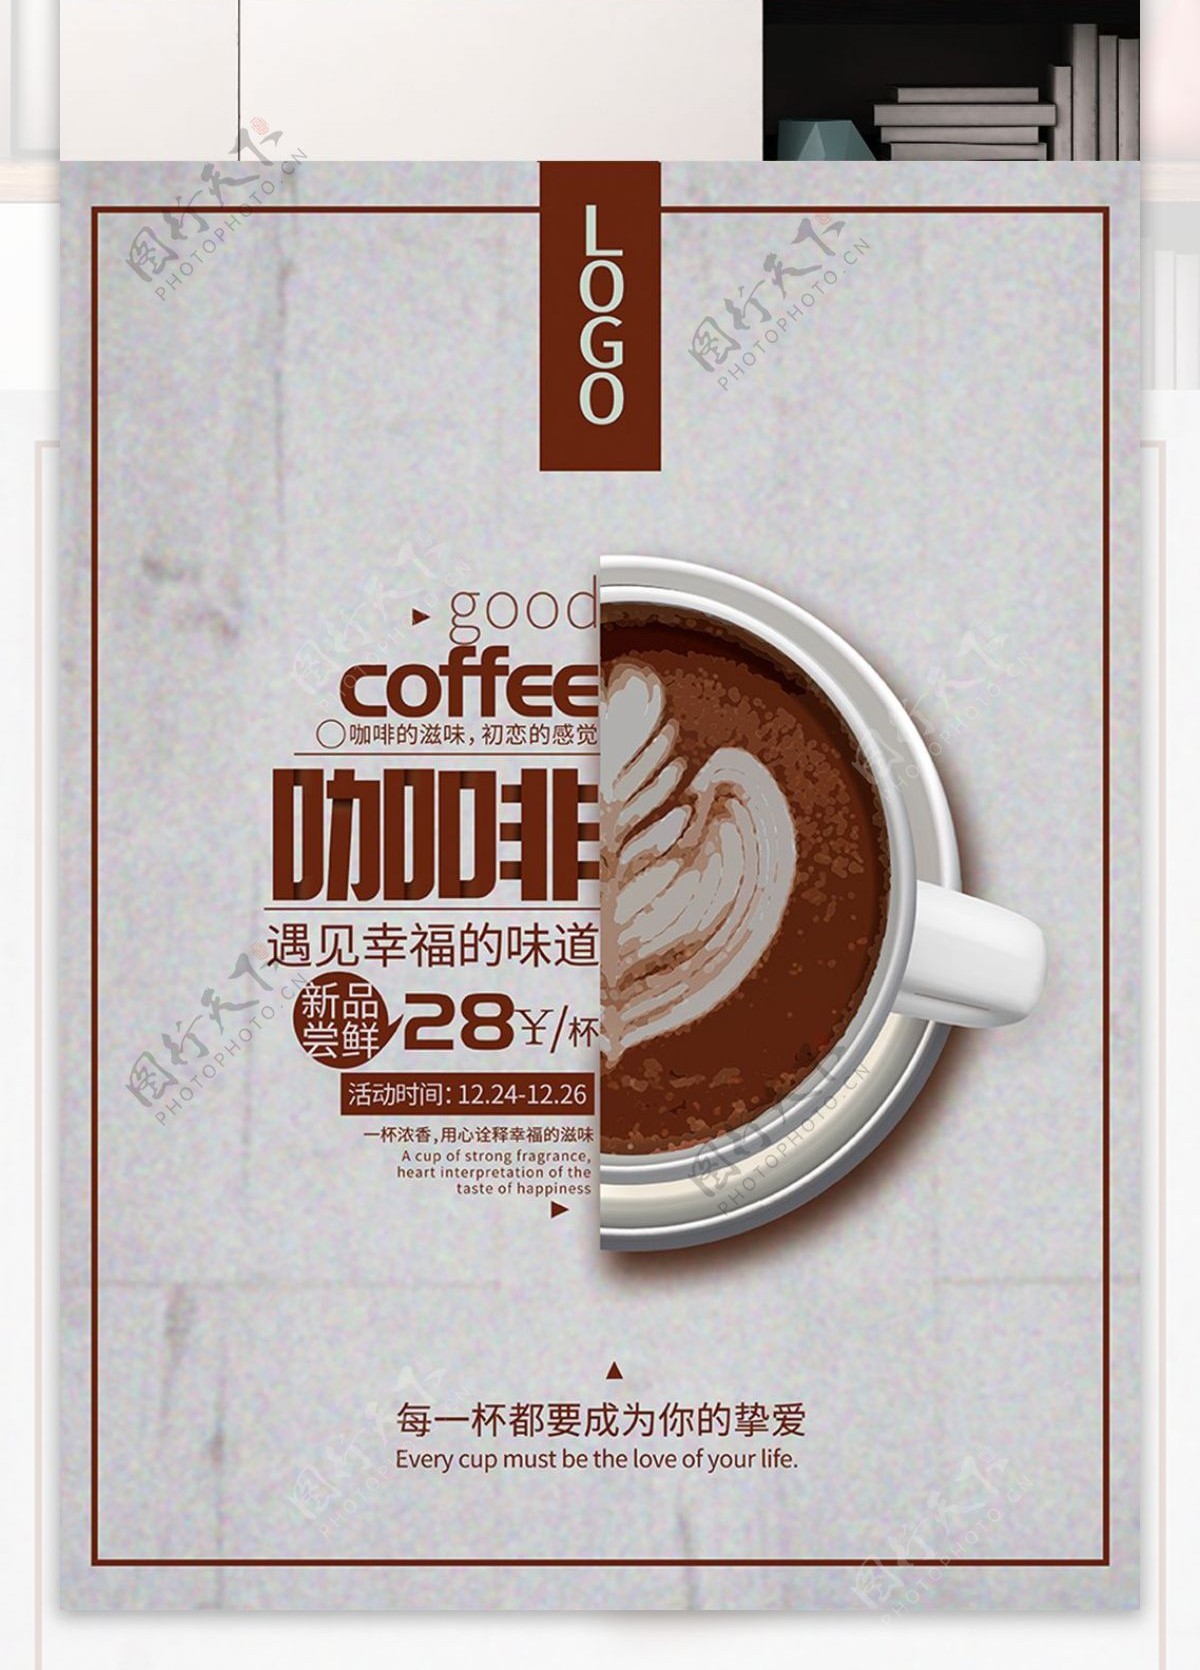 创意极简灰色调咖啡促销海报